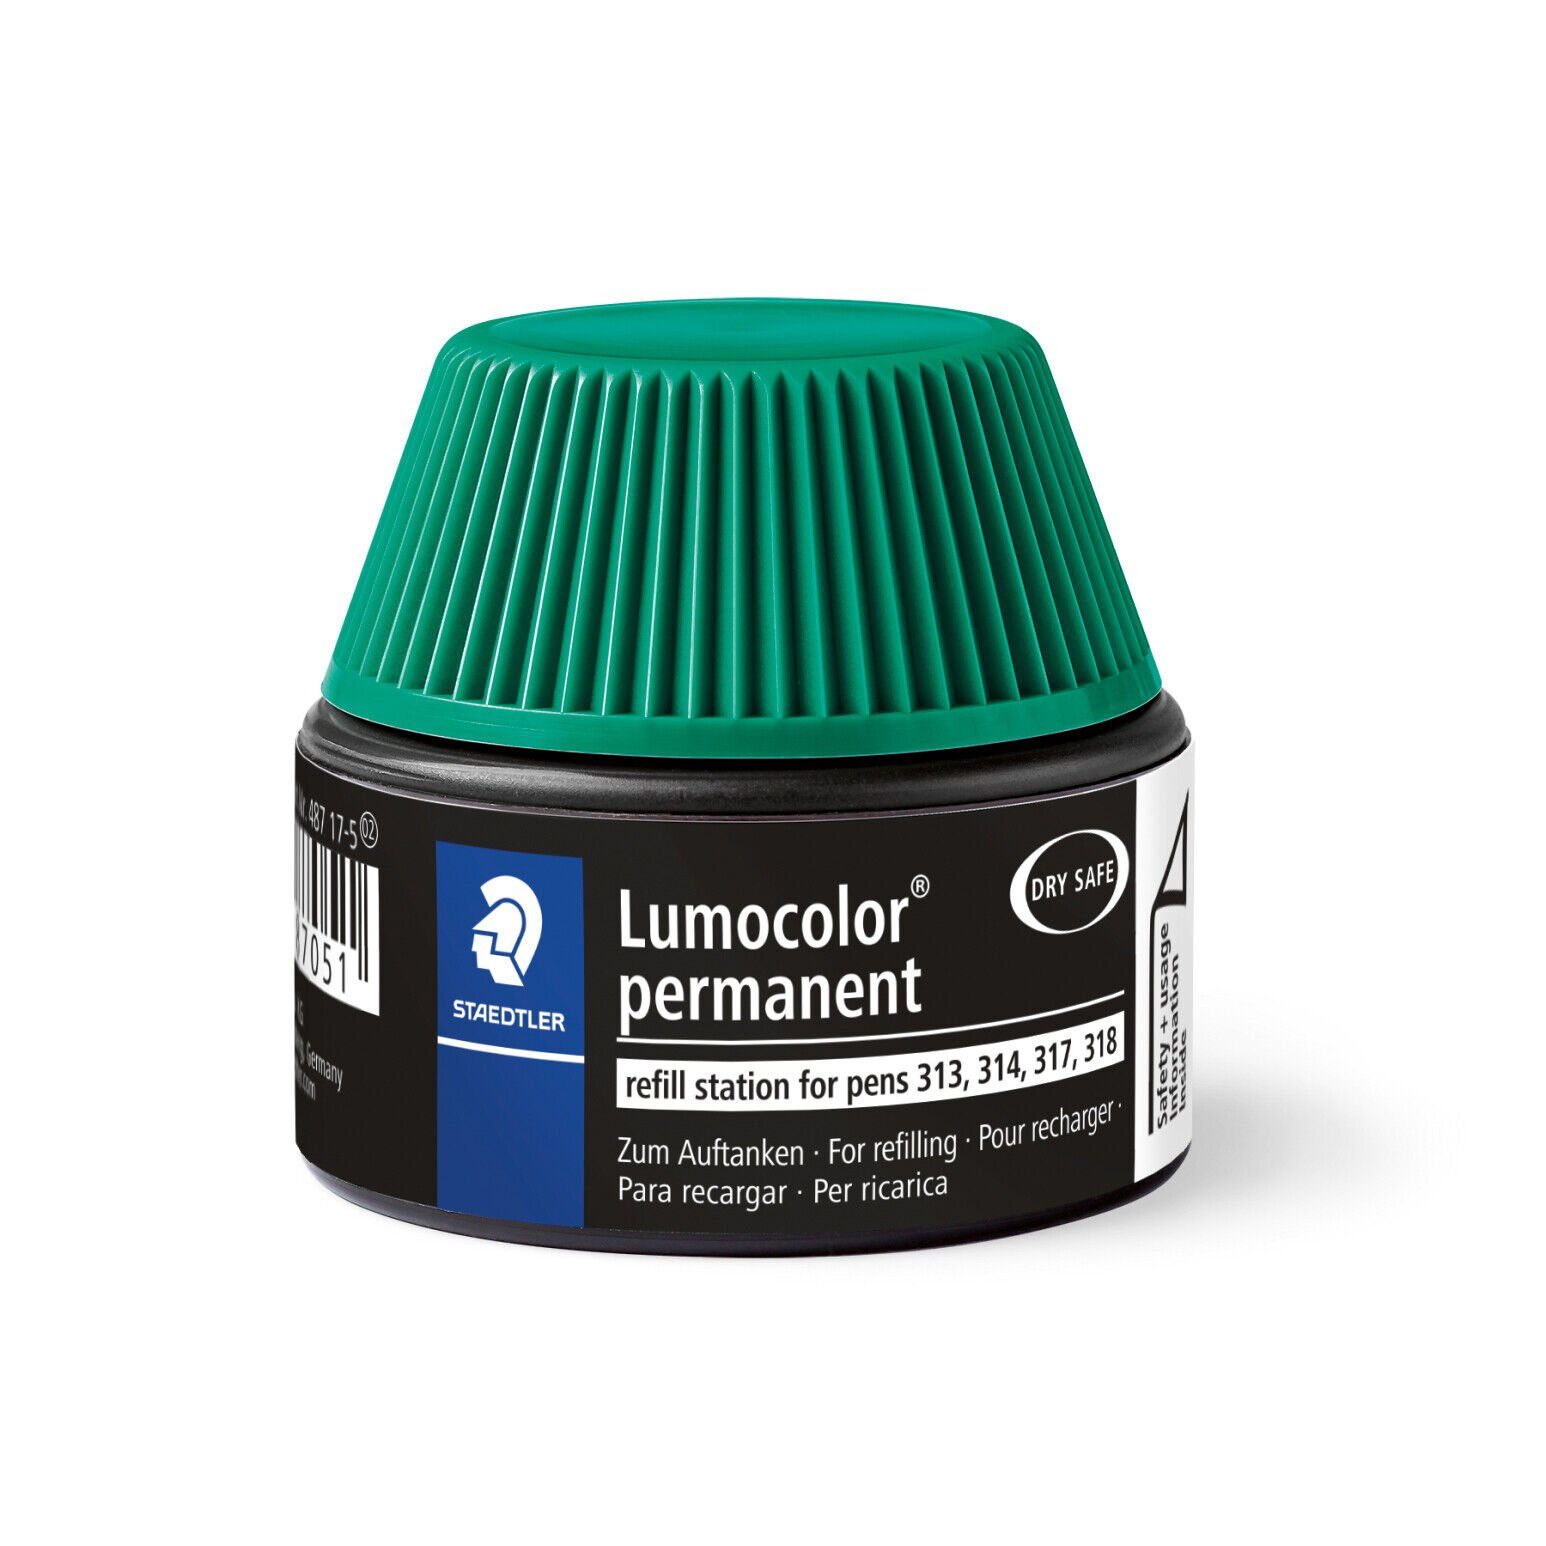 STAEDTLER Marker STAEDTLER Nachfülltinte Lumocolor® Refill permanent 487 17-5 grün, wasserfest, lichtbeständig